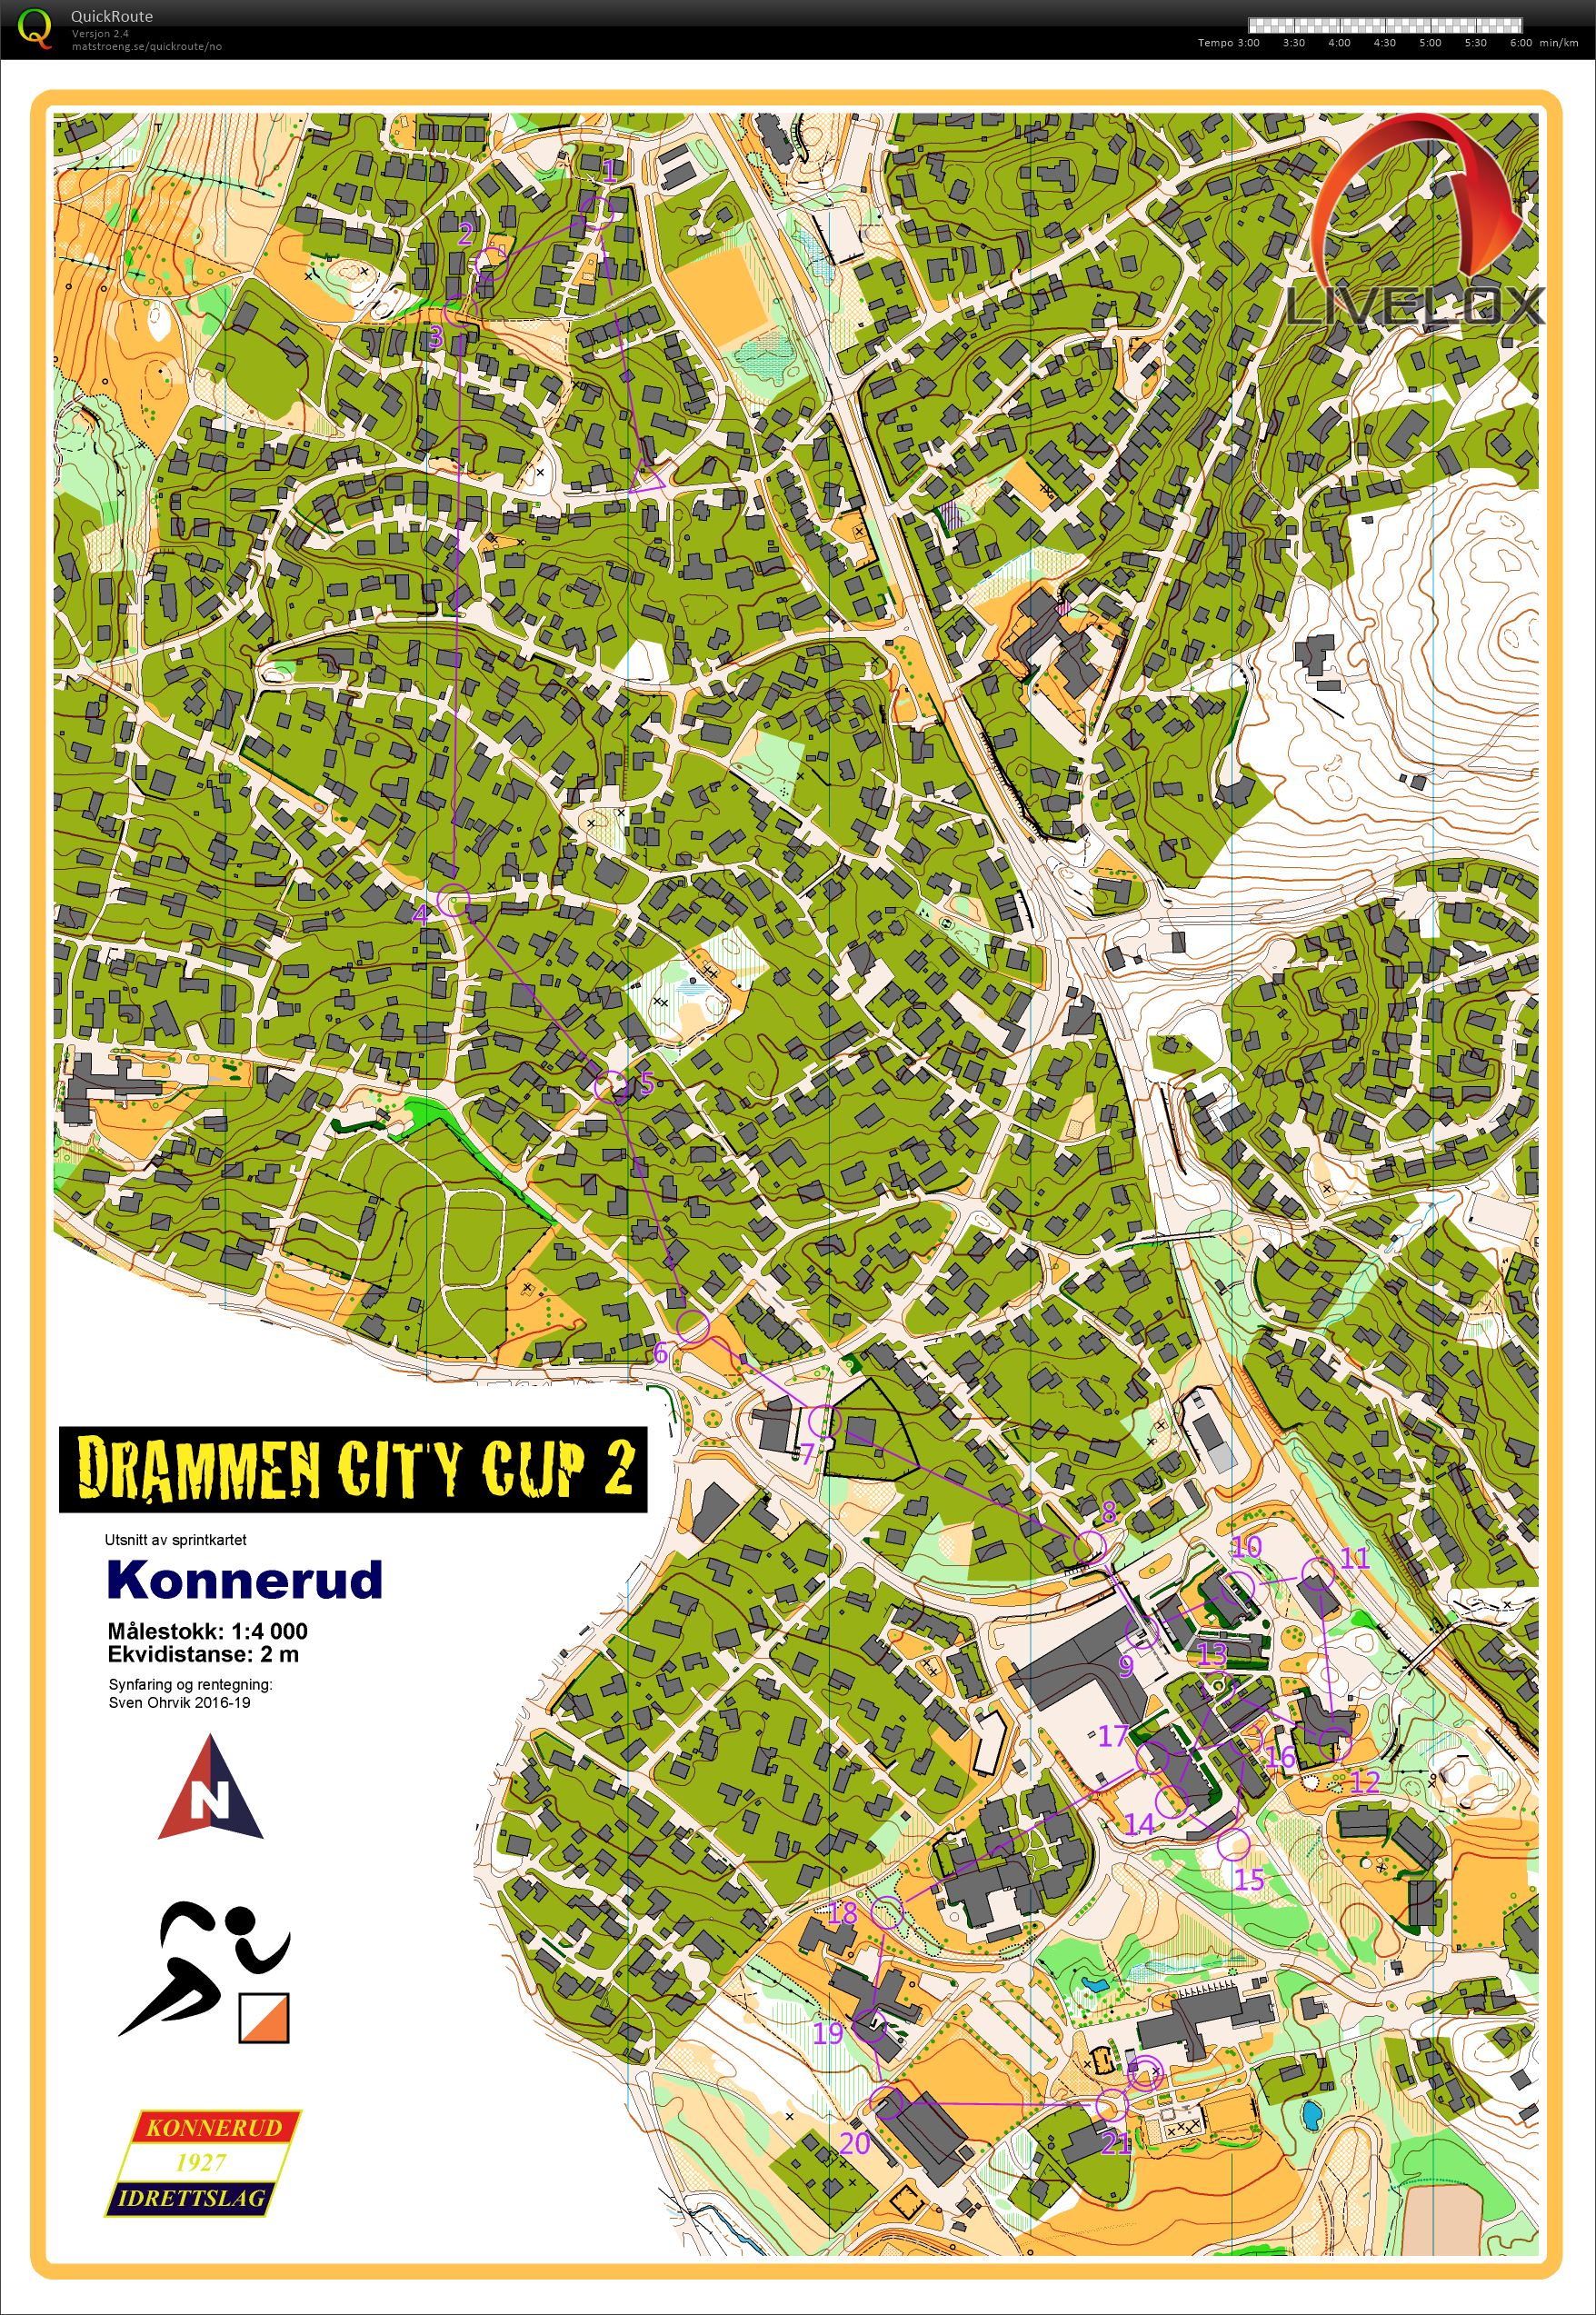 Drammen City Cup løp 2 (11/04/2019)